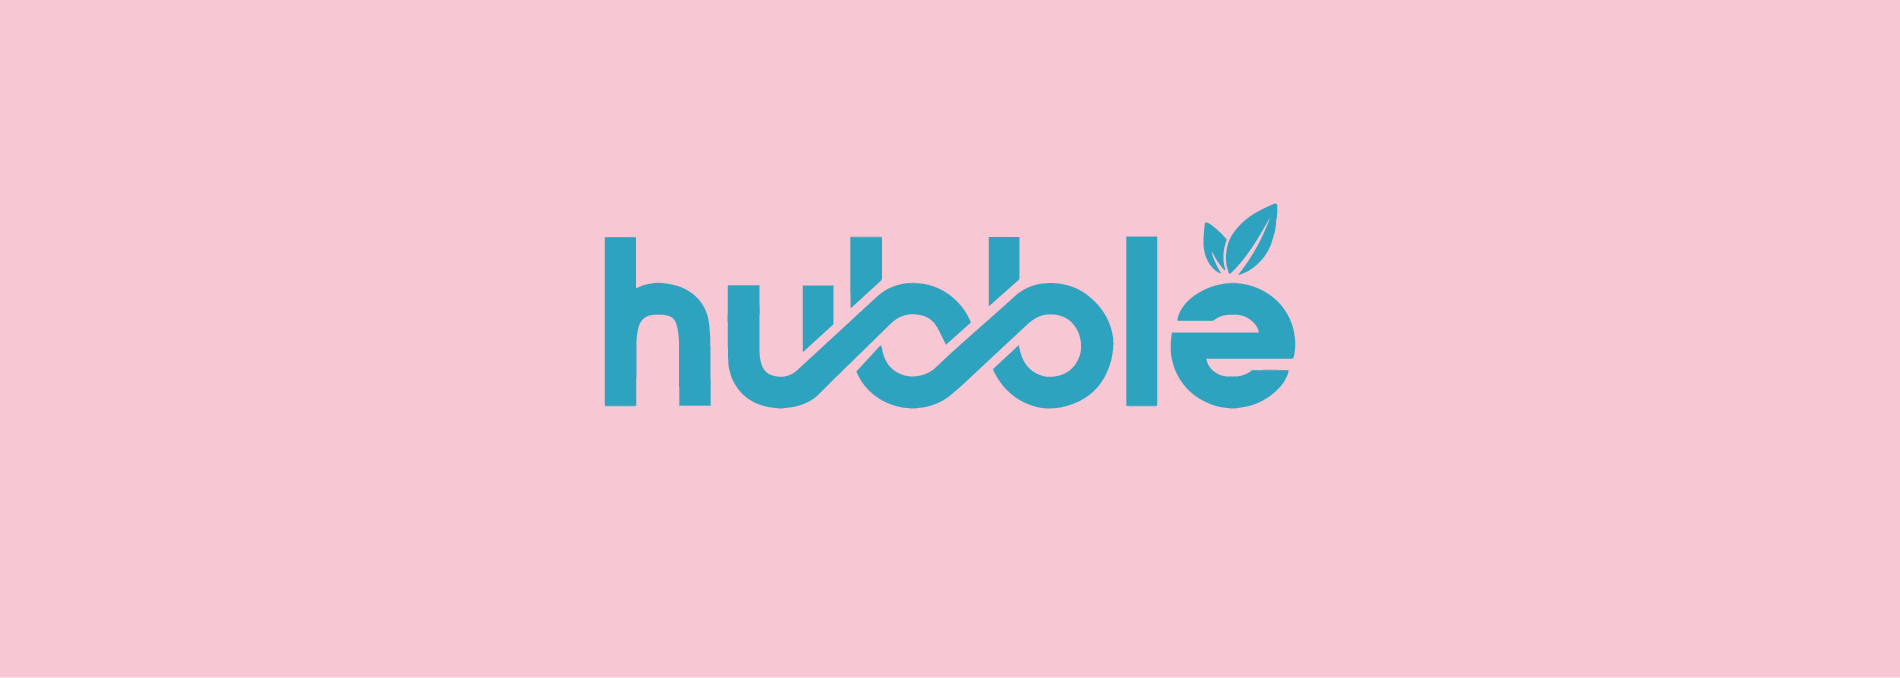 hubble logo